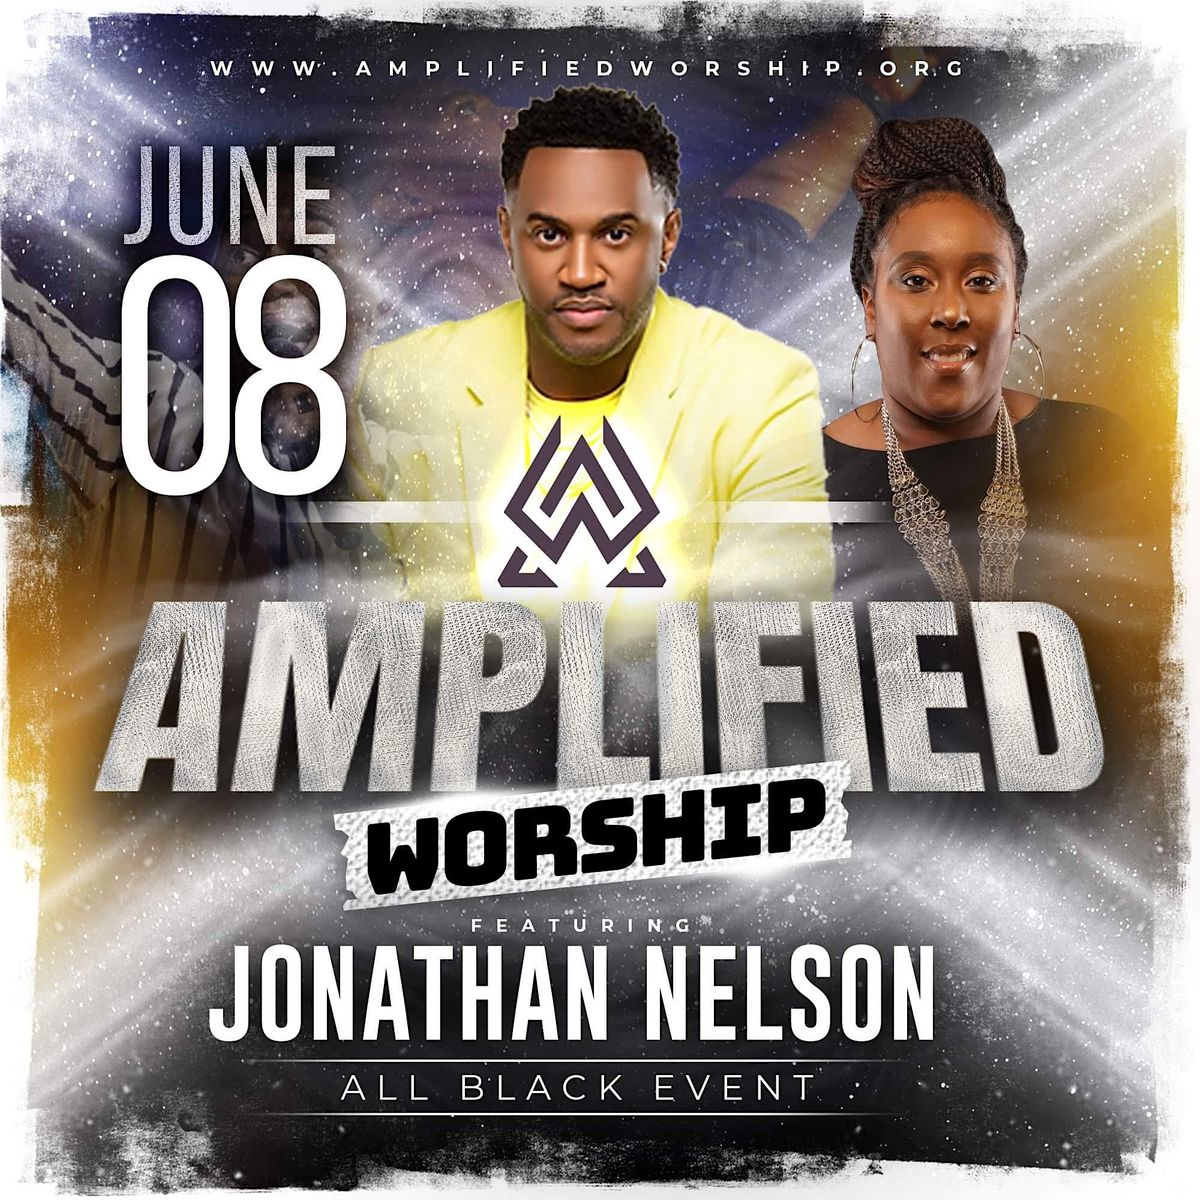 Amplified Worship